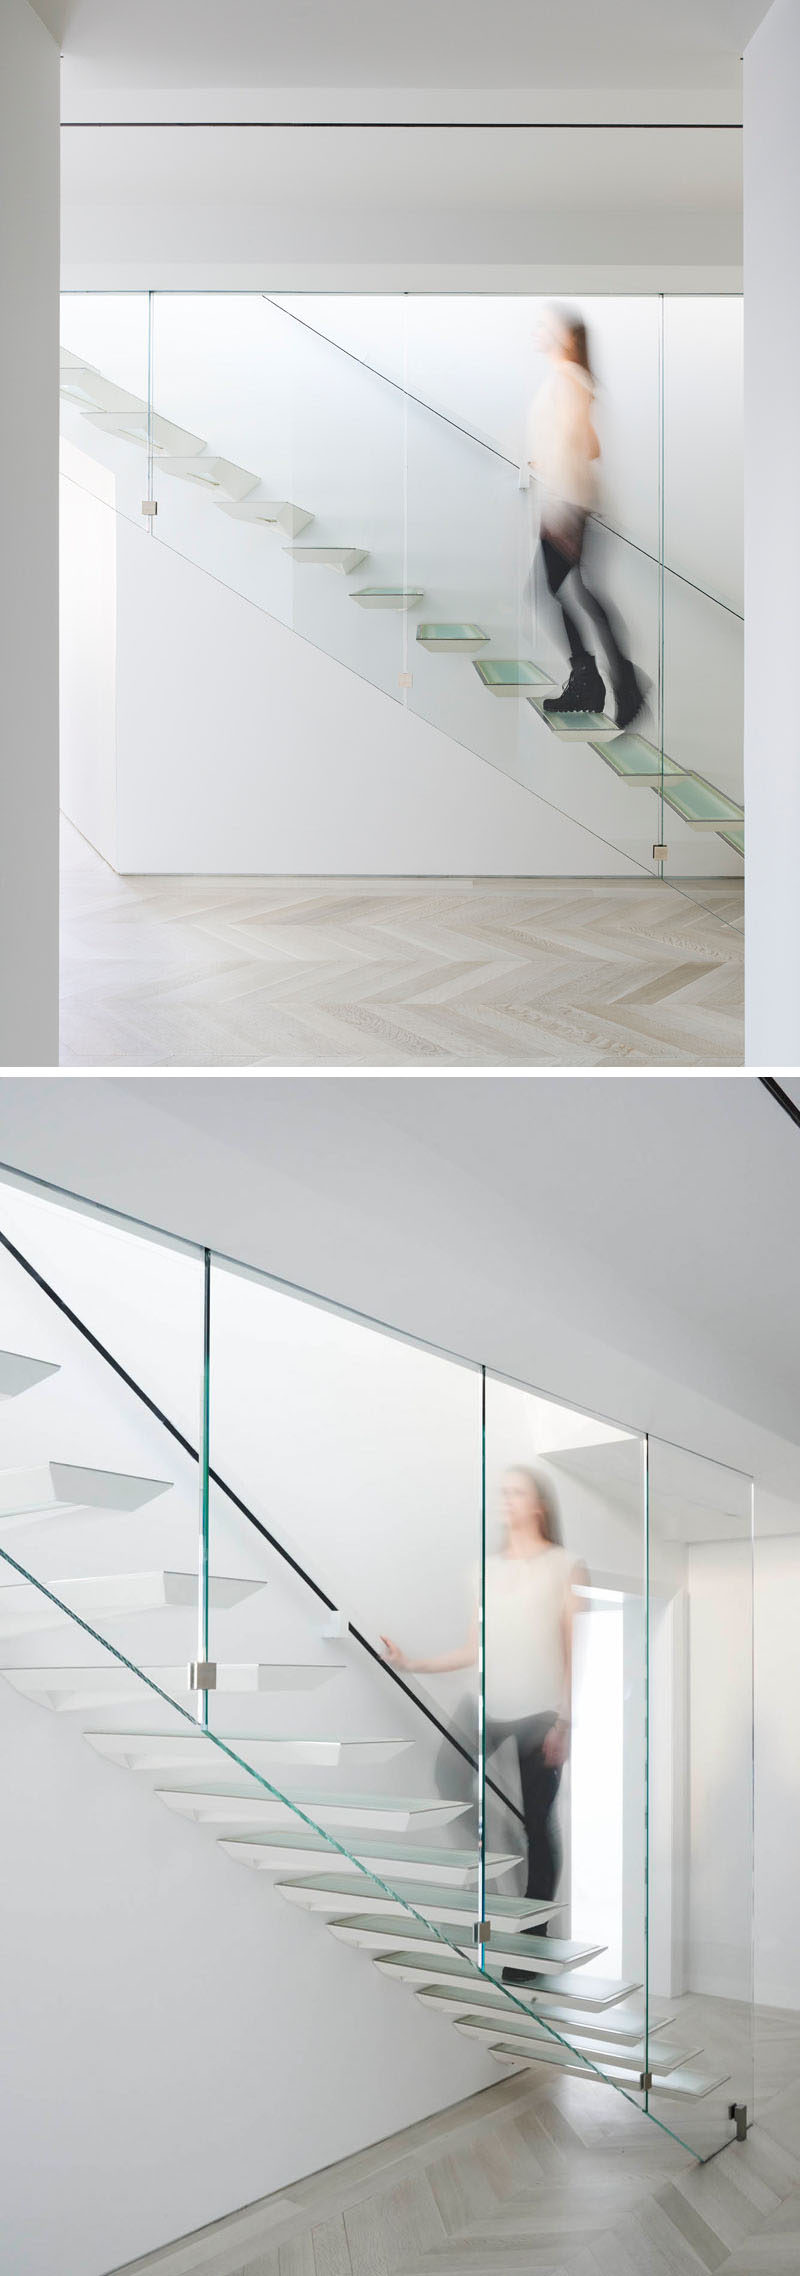 Идея современного дизайна лестницы - эти лестницы были вдохновлены японской форма складывания бумаги. 